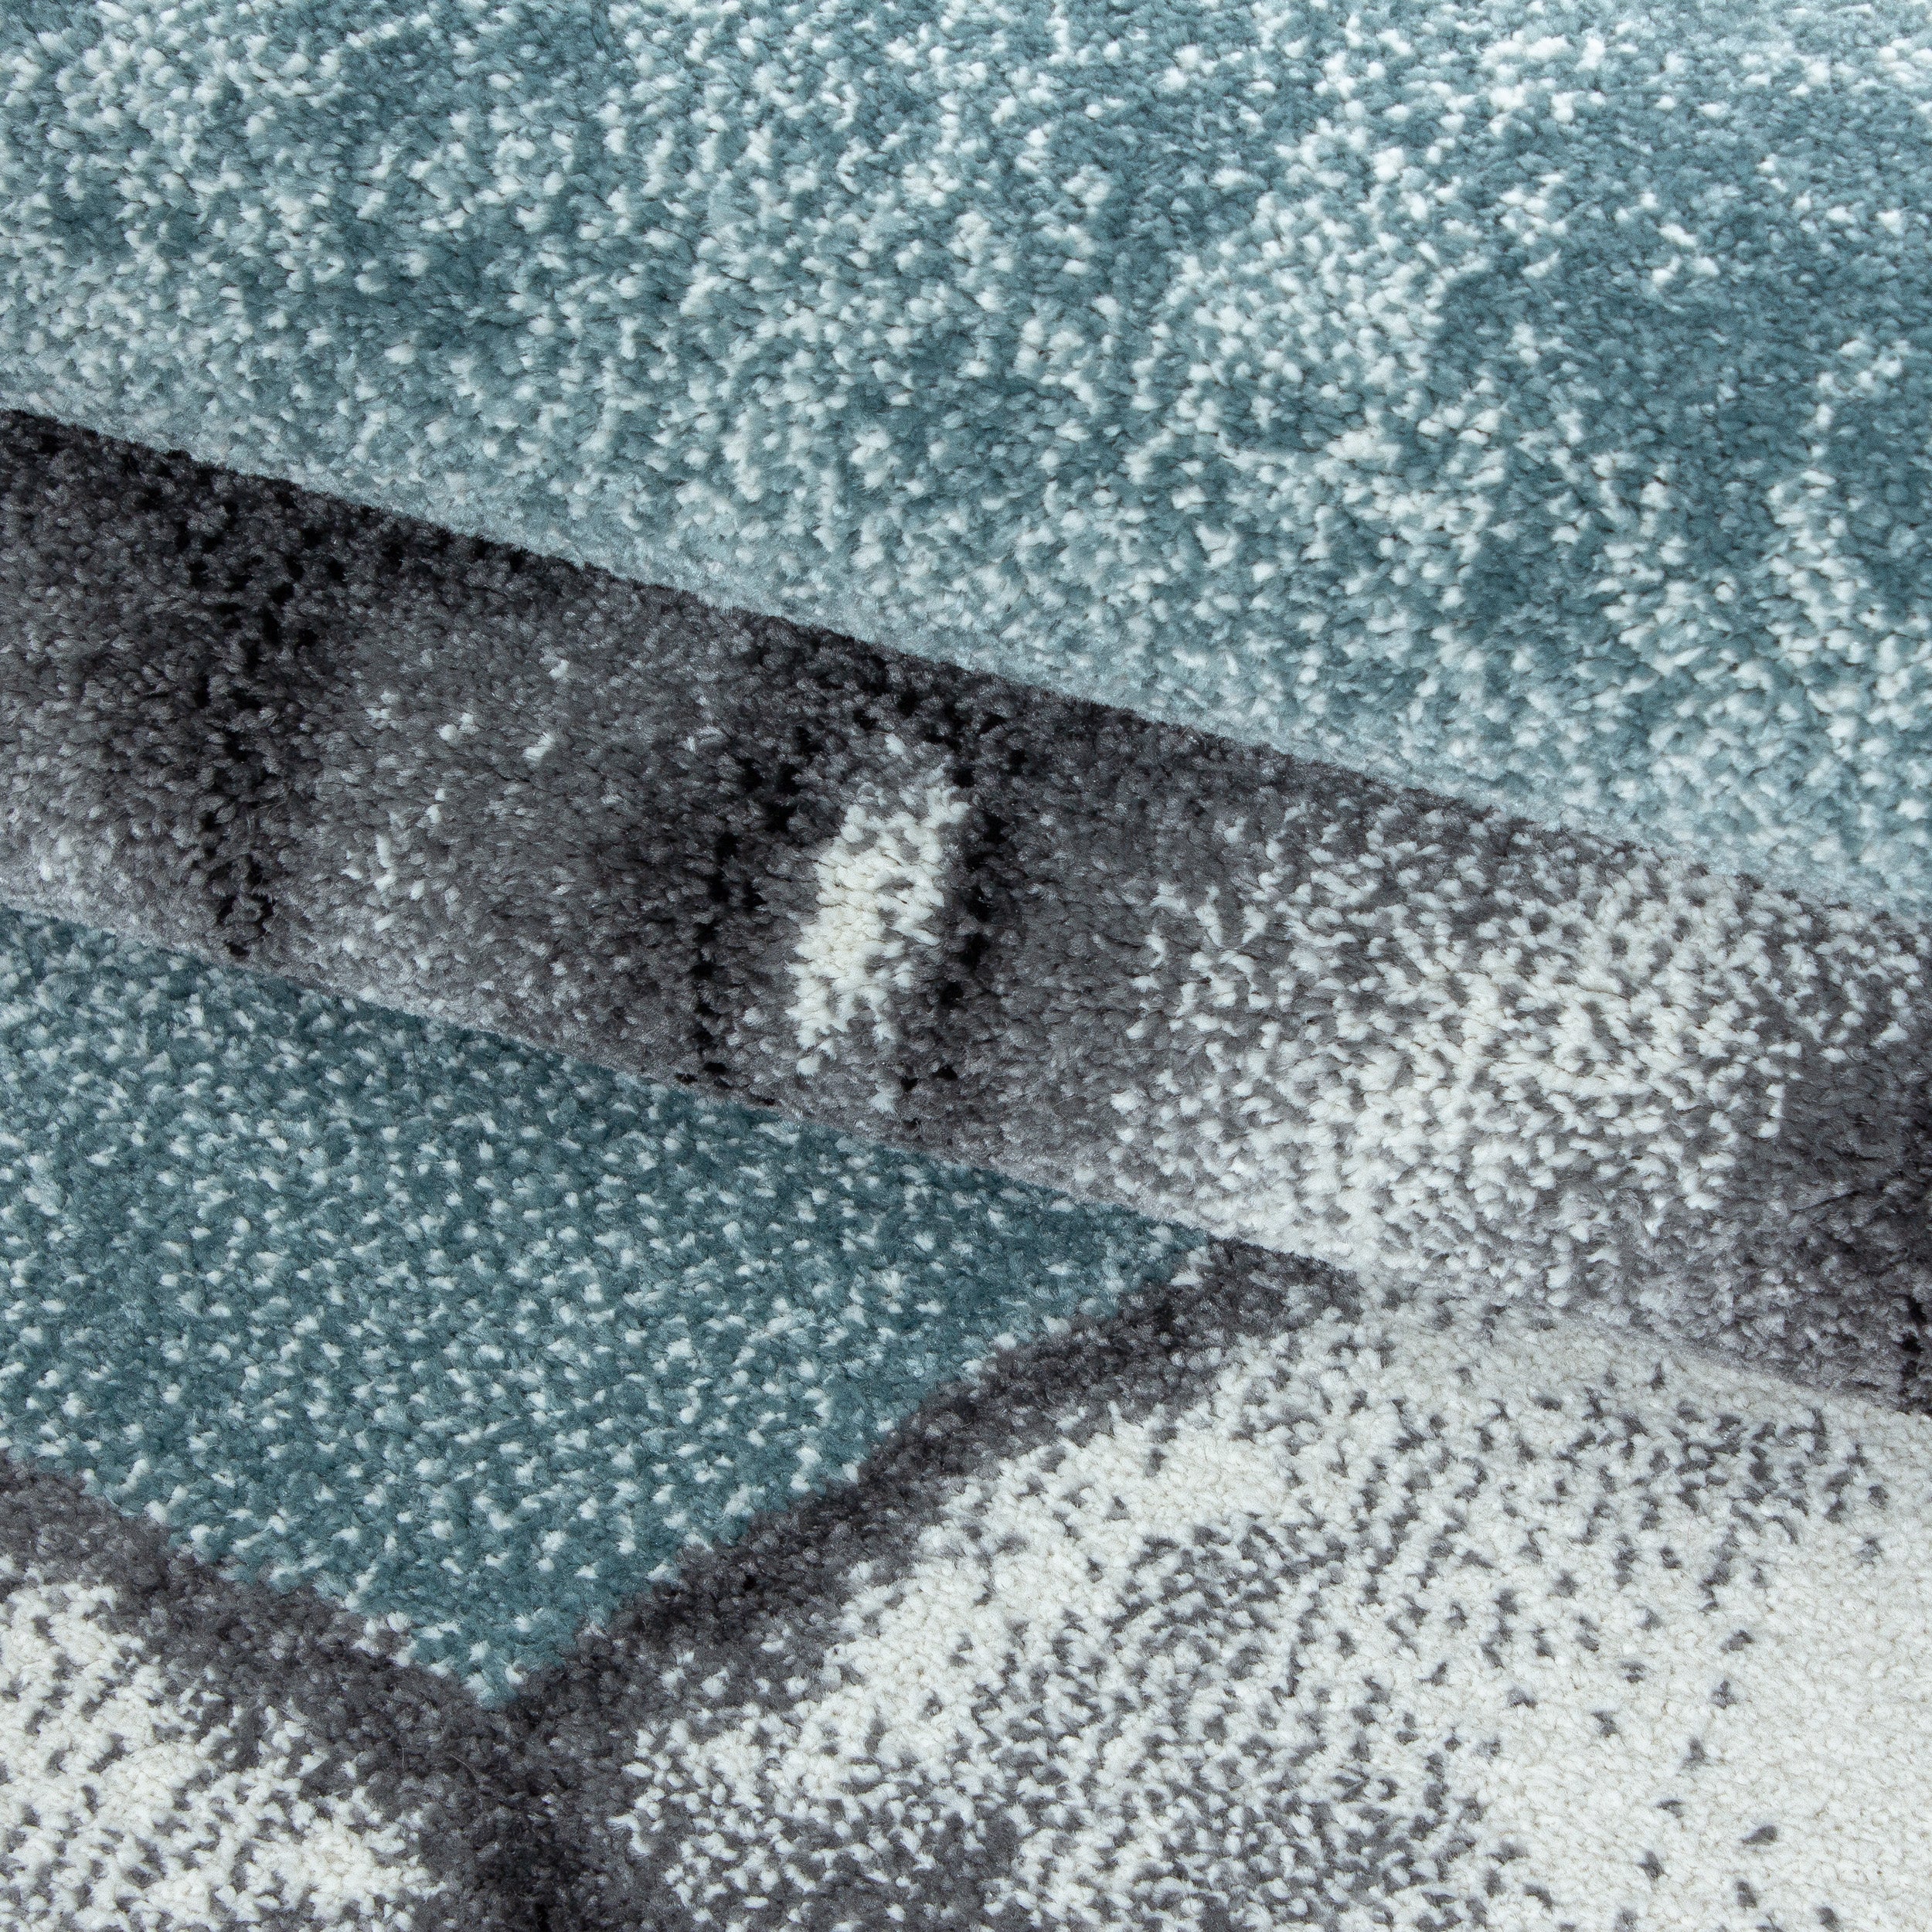 Kurzflor Kinderteppich Schildkröte Kinderzimmer Teppich Soft Grau Blau Meliert